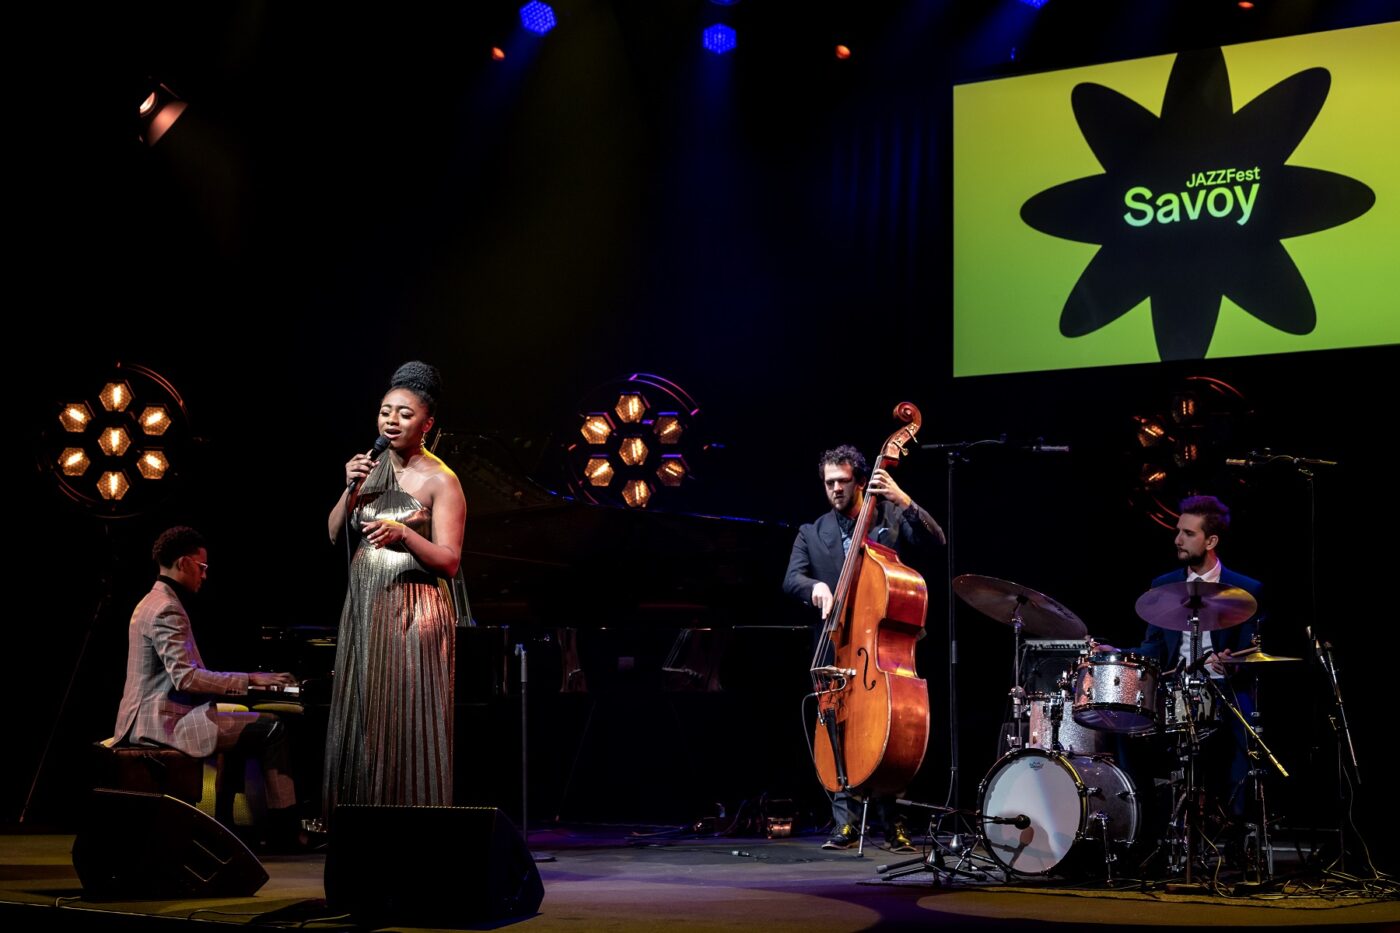 Samara Joy laulaa, bändi soittaa pianoa, bassoa ja rumpuja Savoy-teatterin lavalla. Taustalla Savoy JAZZFest logo.